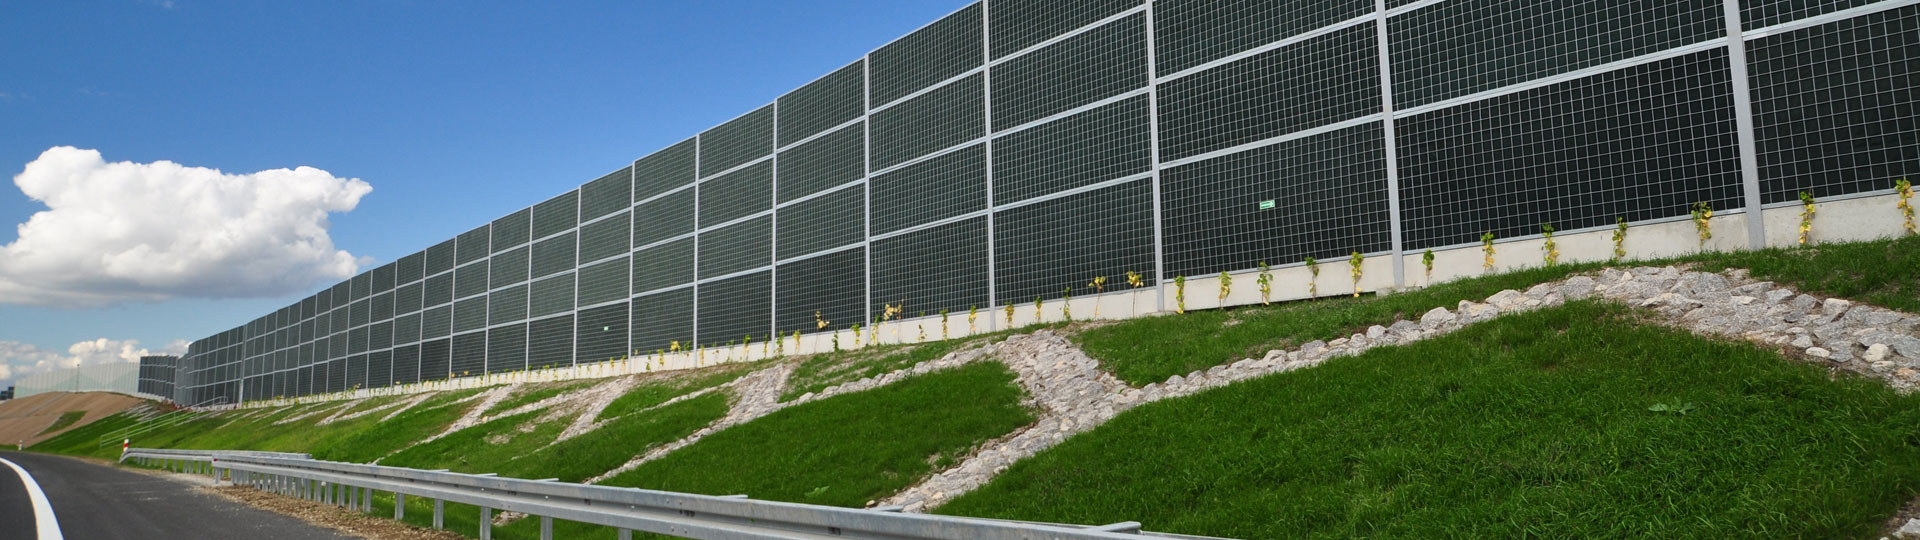 WELDON green wall noise barriers manufacturer Poland